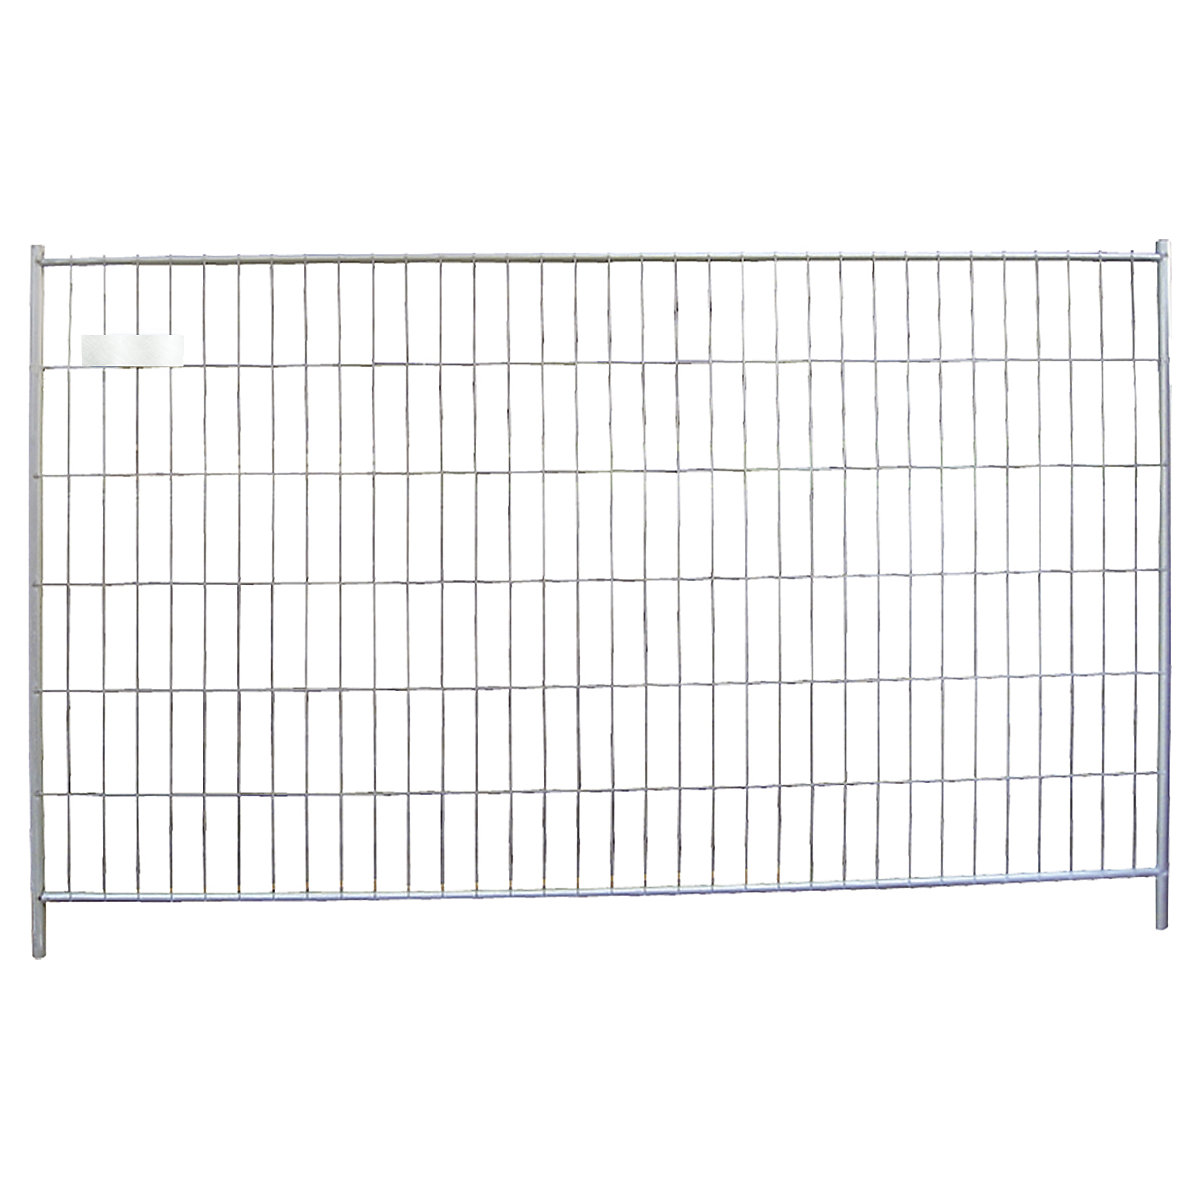 Gard pentru construcții, element perete, lățime 3500 mm, înălțime 2000 mm